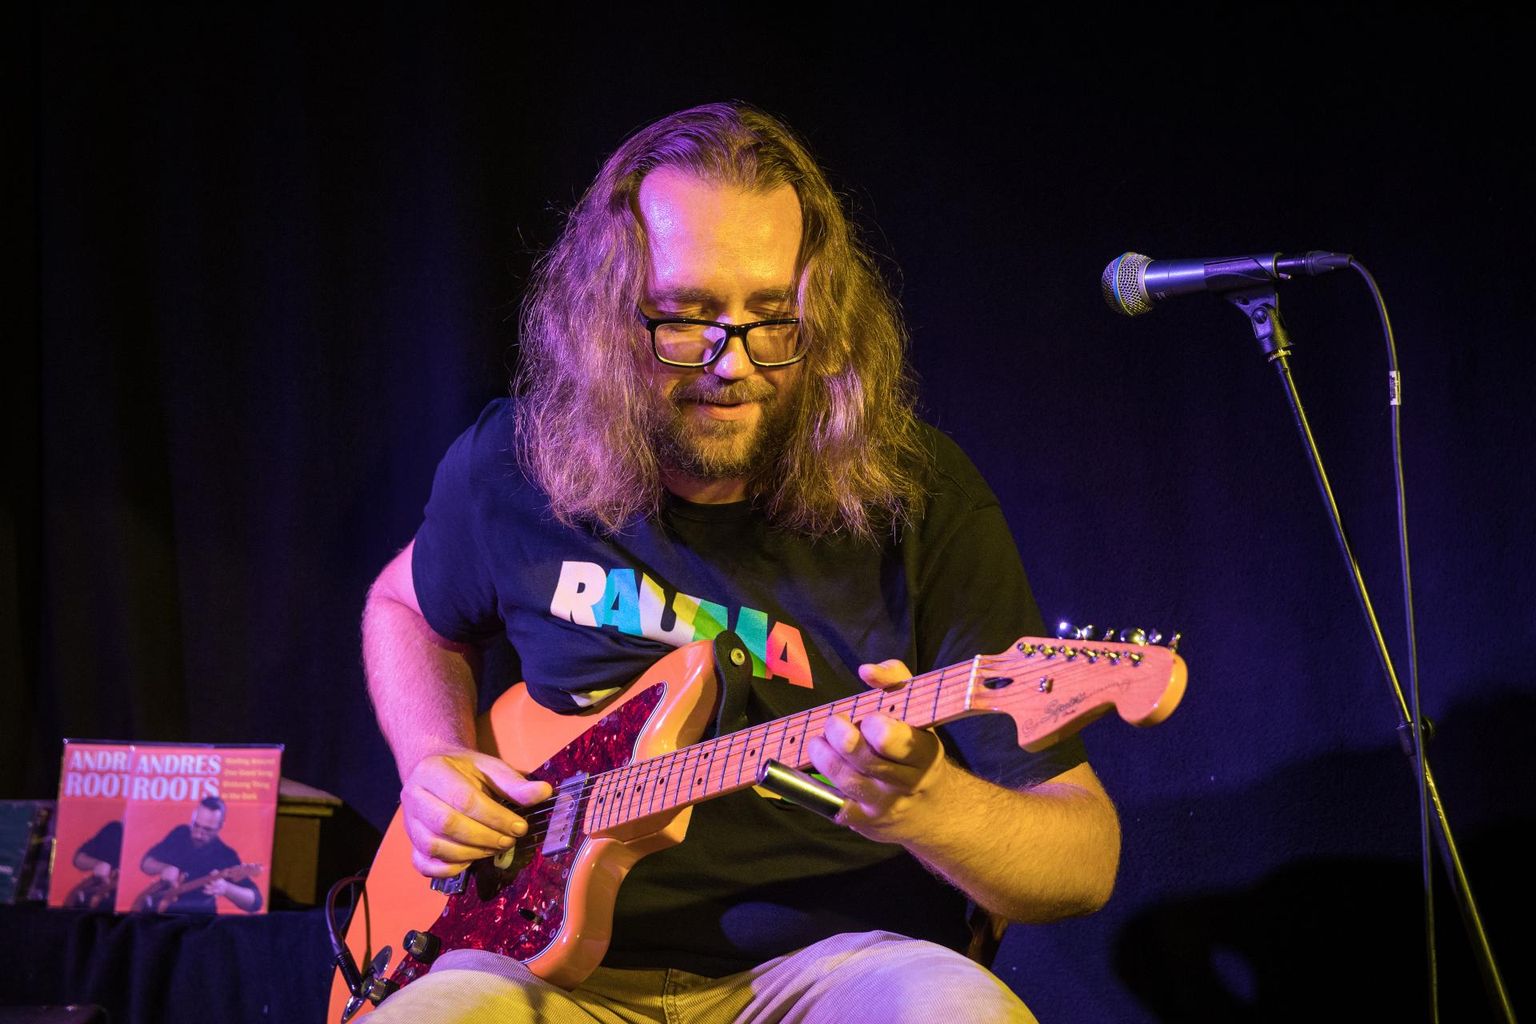 Andres Roots on tunnustatud Eesti kitarrist ja maailmakuulus bluusimängija.